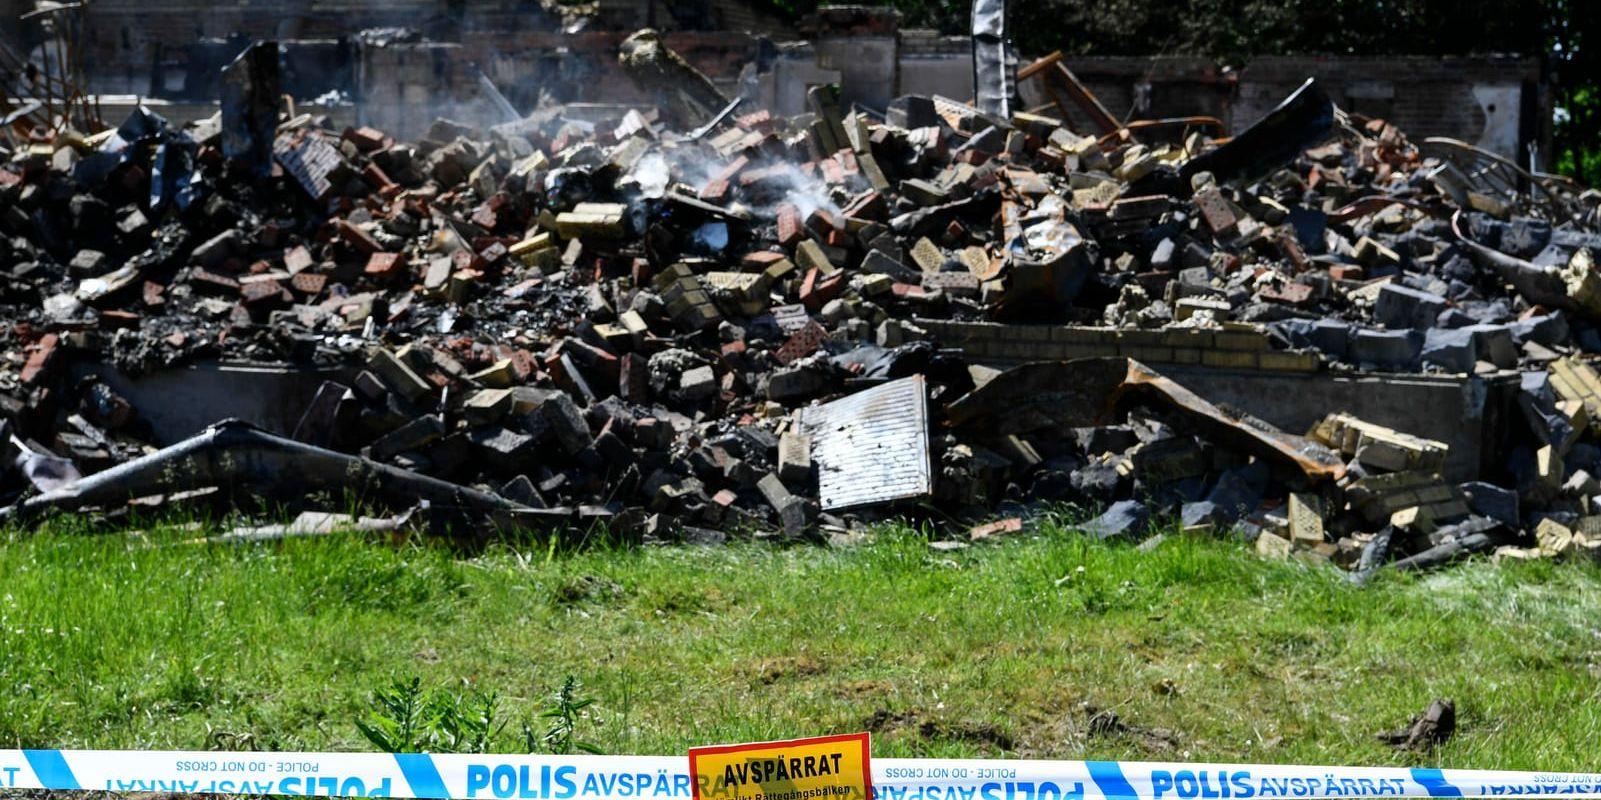 Väktare och avspärrningar kring det utbrända asylboendet i Asarum i Blekinge i juni 2017. Arkivbild.